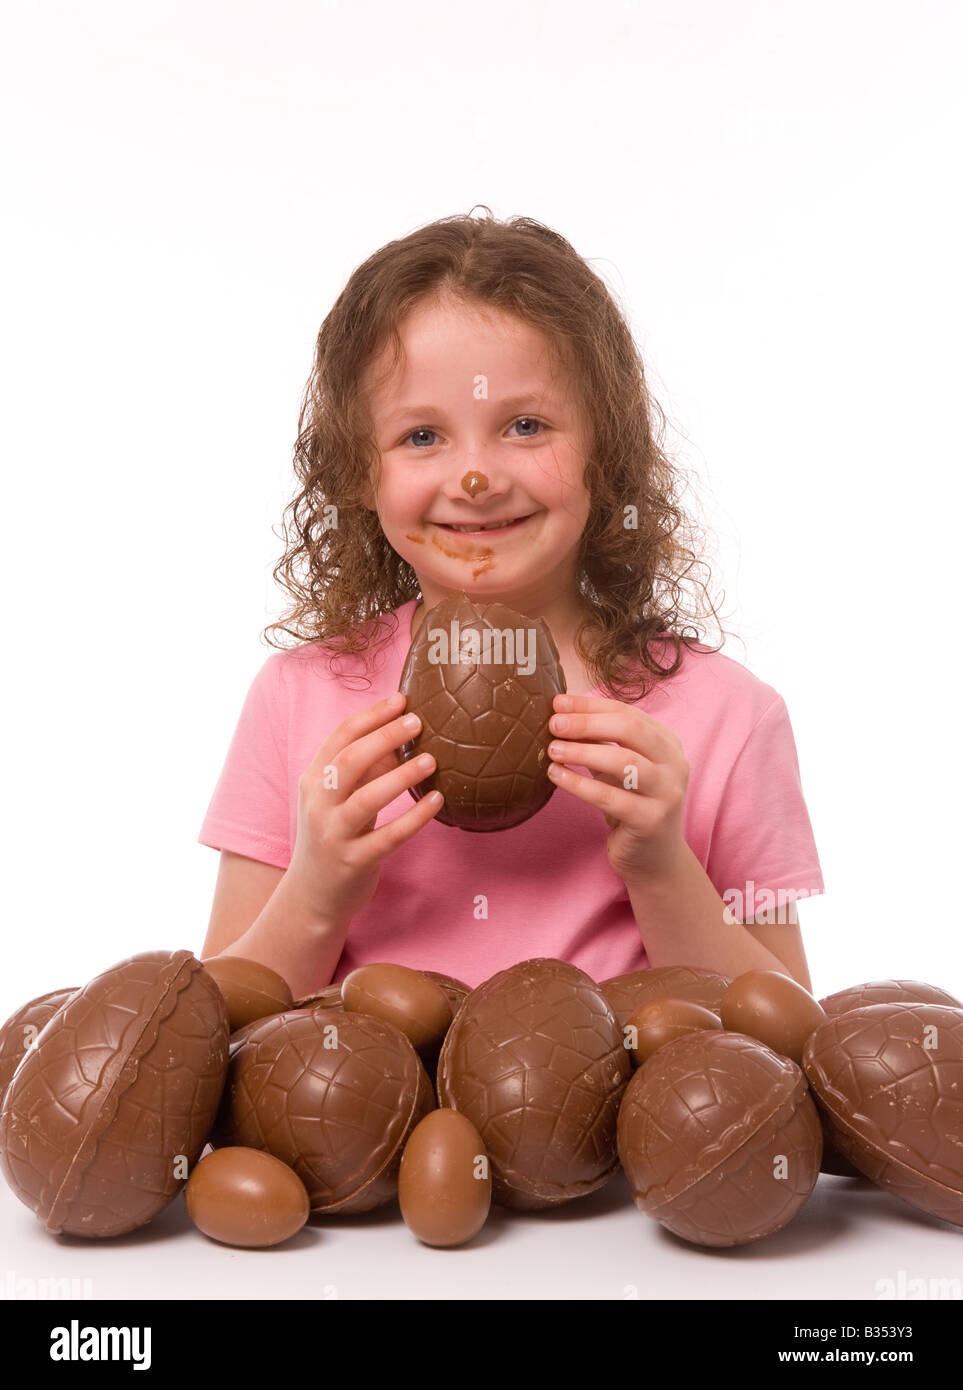 Jeune enfant souriant avec du chocolat sur son visage, tenant un morceau de Pâques avec beaucoup d'oeufs de Pâques au premier plan. Banque D'Images